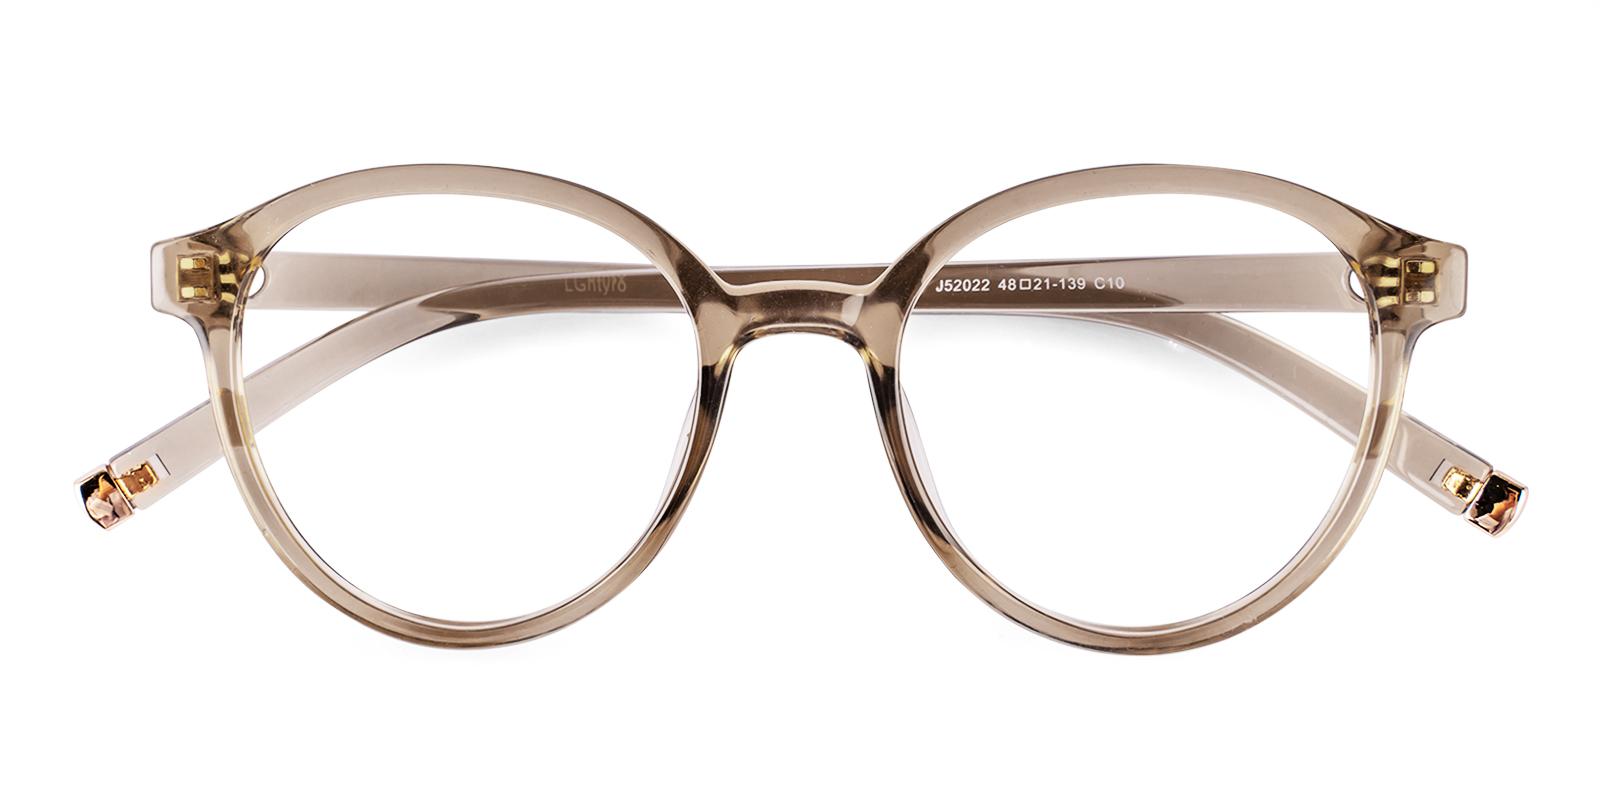 Cellery Brown Plastic Eyeglasses , UniversalBridgeFit Frames from ABBE Glasses